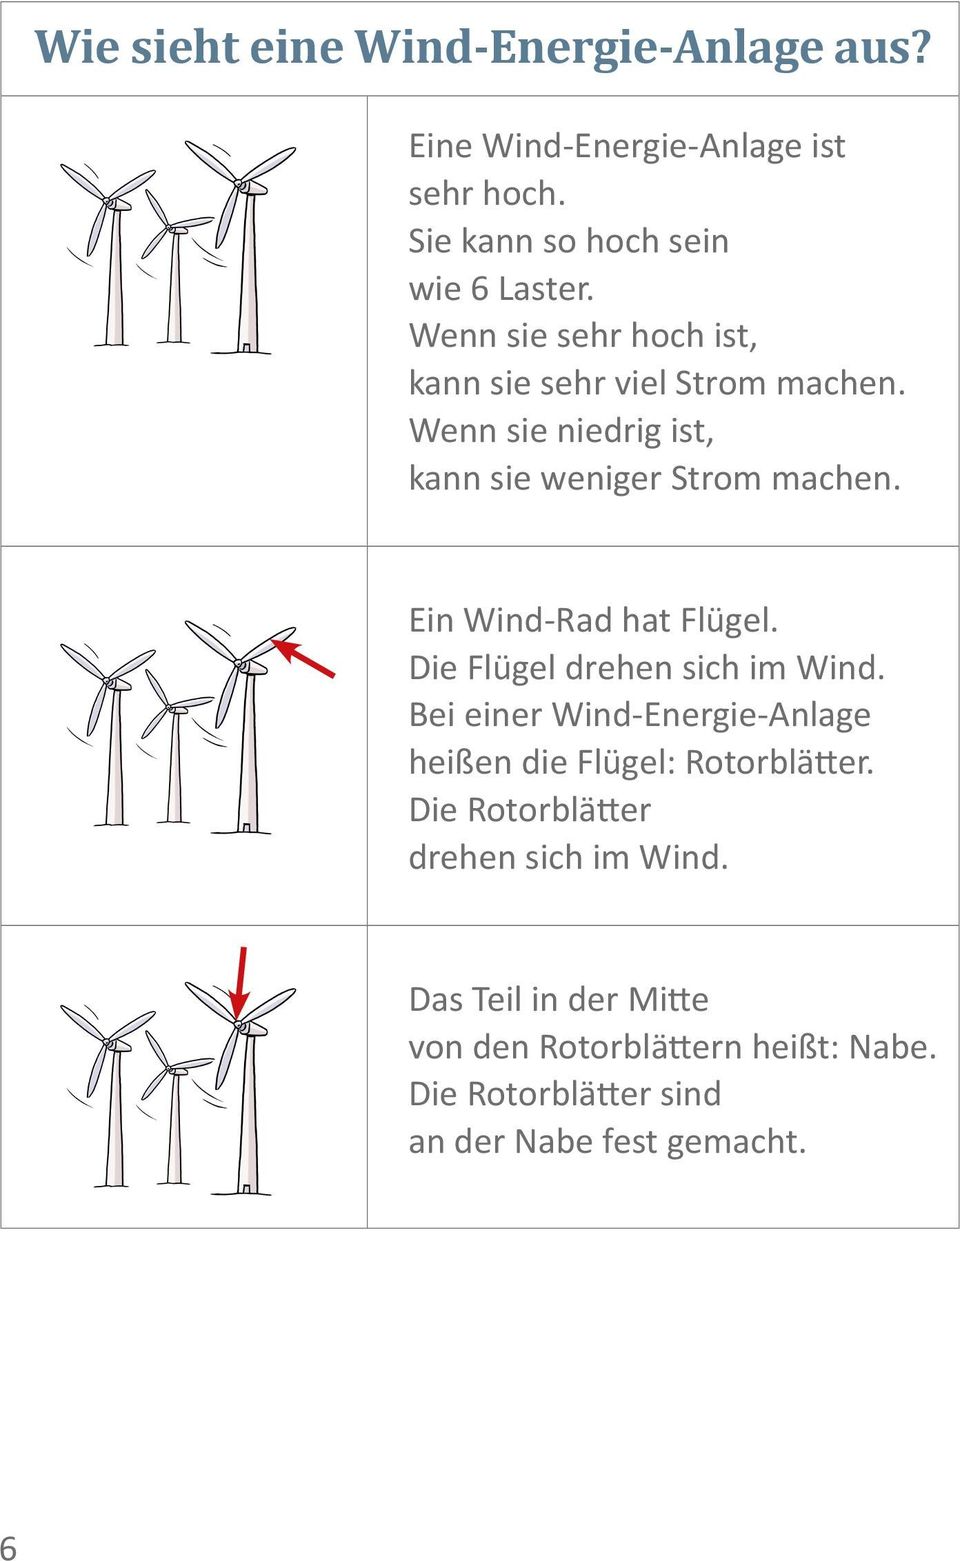 Ein Wind-Rad hat Flügel. Die Flügel drehen sich im Wind. Bei einer Wind-Energie-Anlage heißen die Flügel: Rotorblätter.